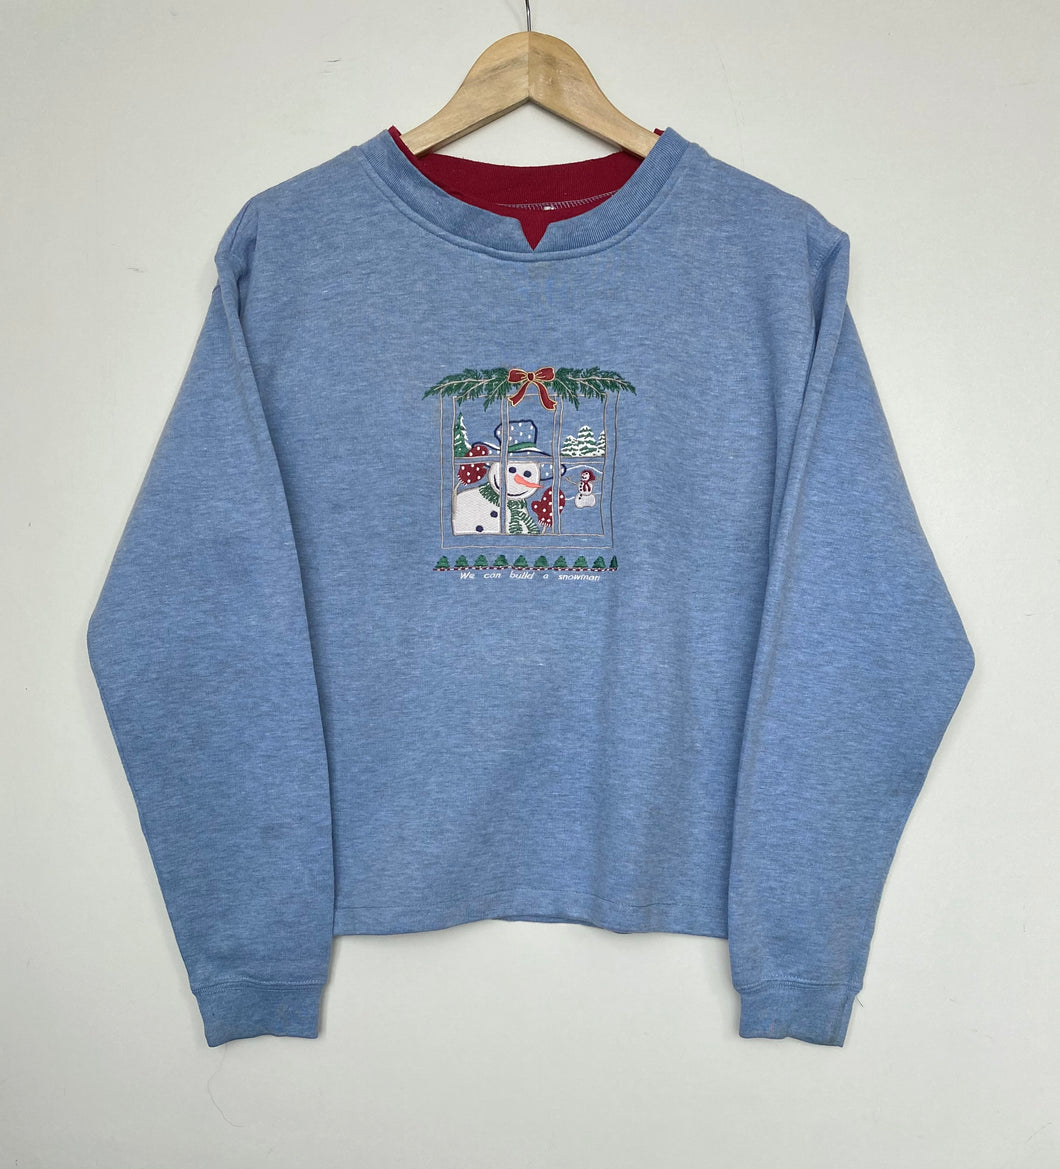 Embroidered ‘Snowman’ sweatshirt (M)